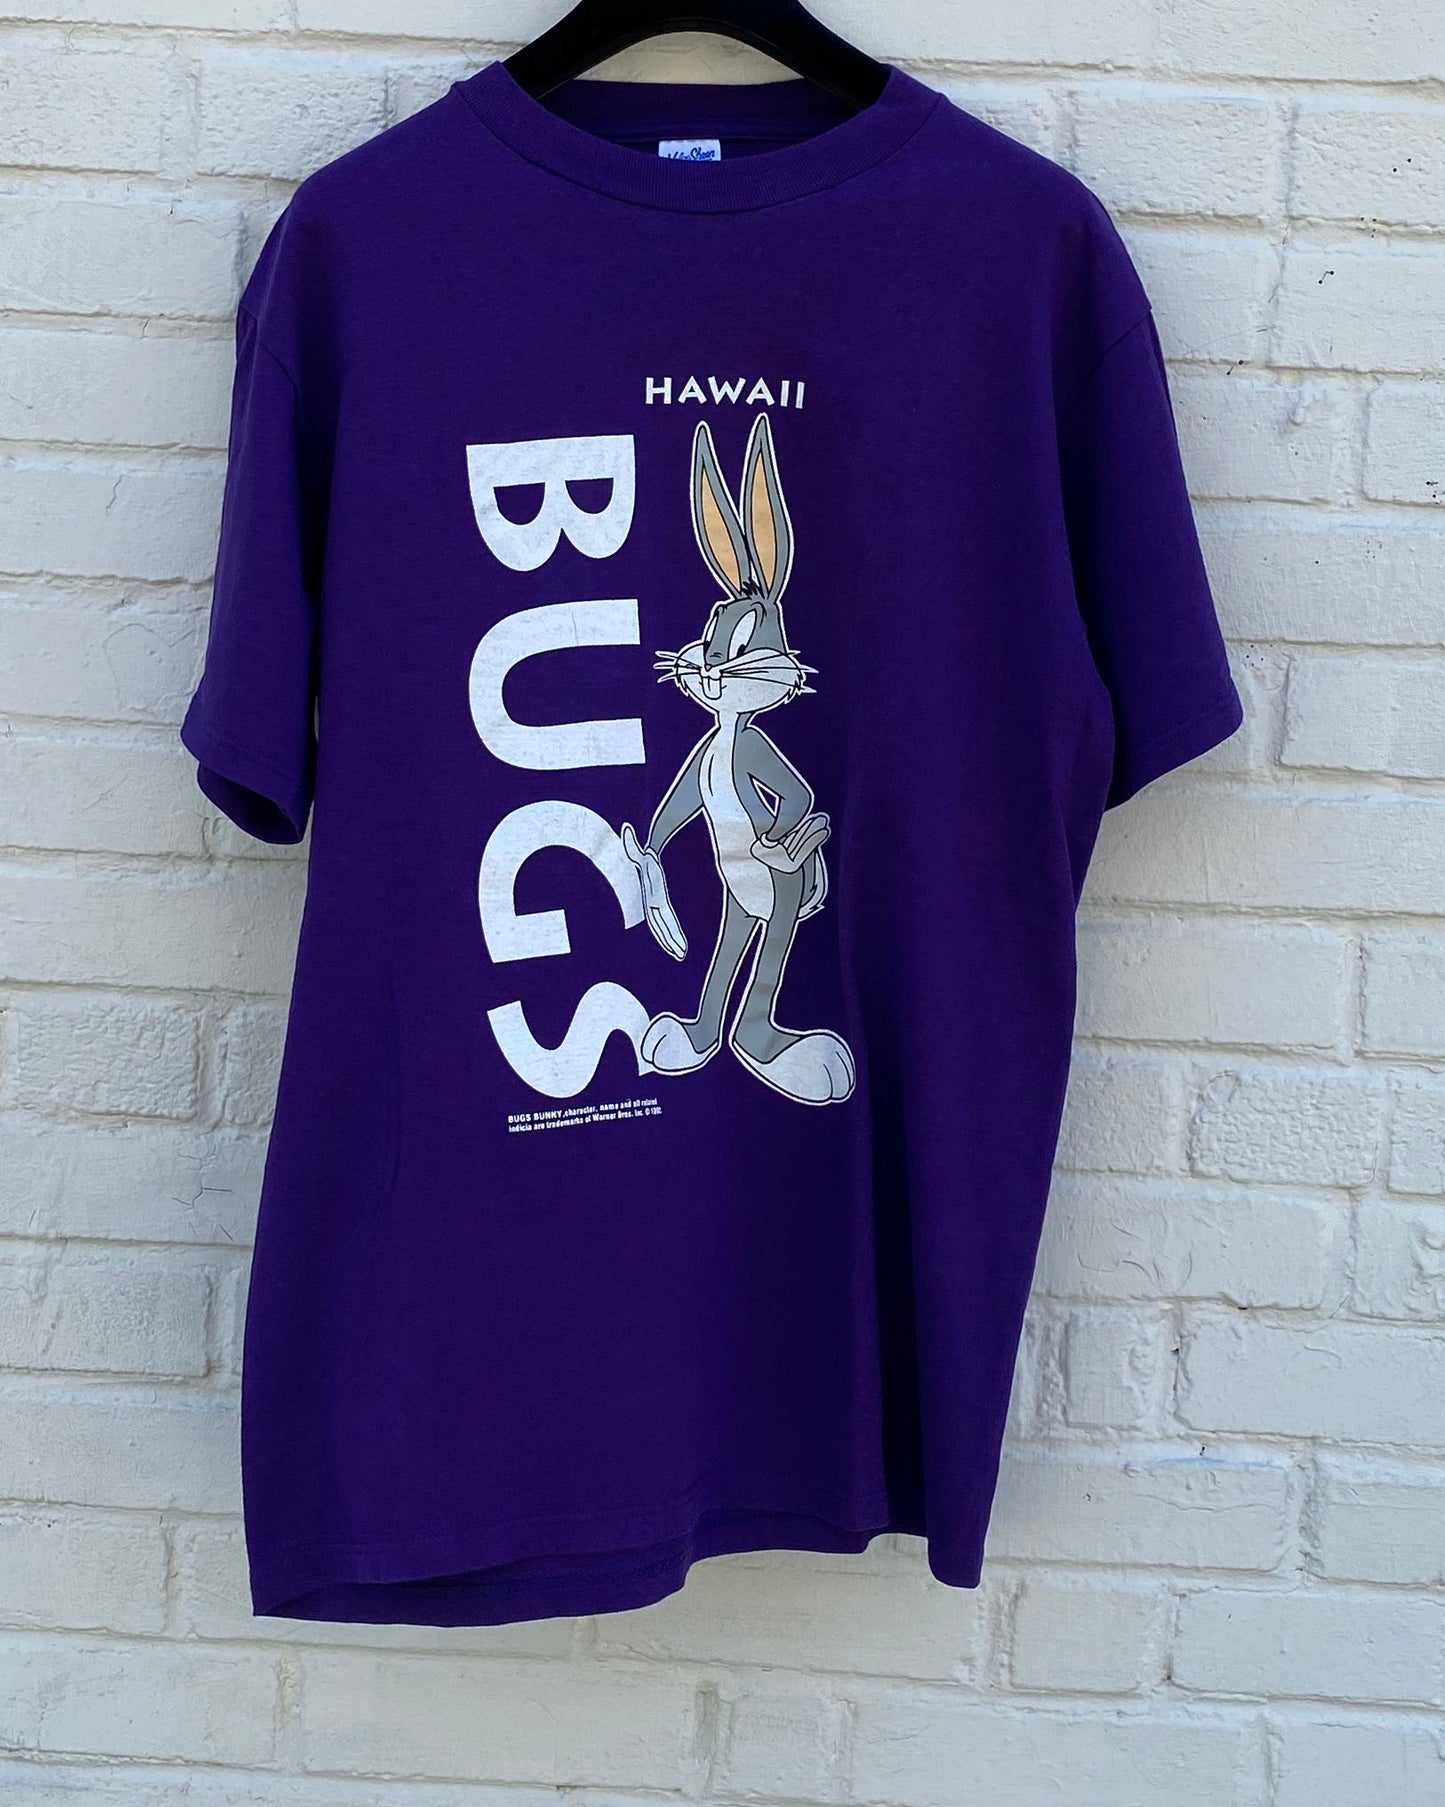 Hawaii Bugs Bunny T-Shirt